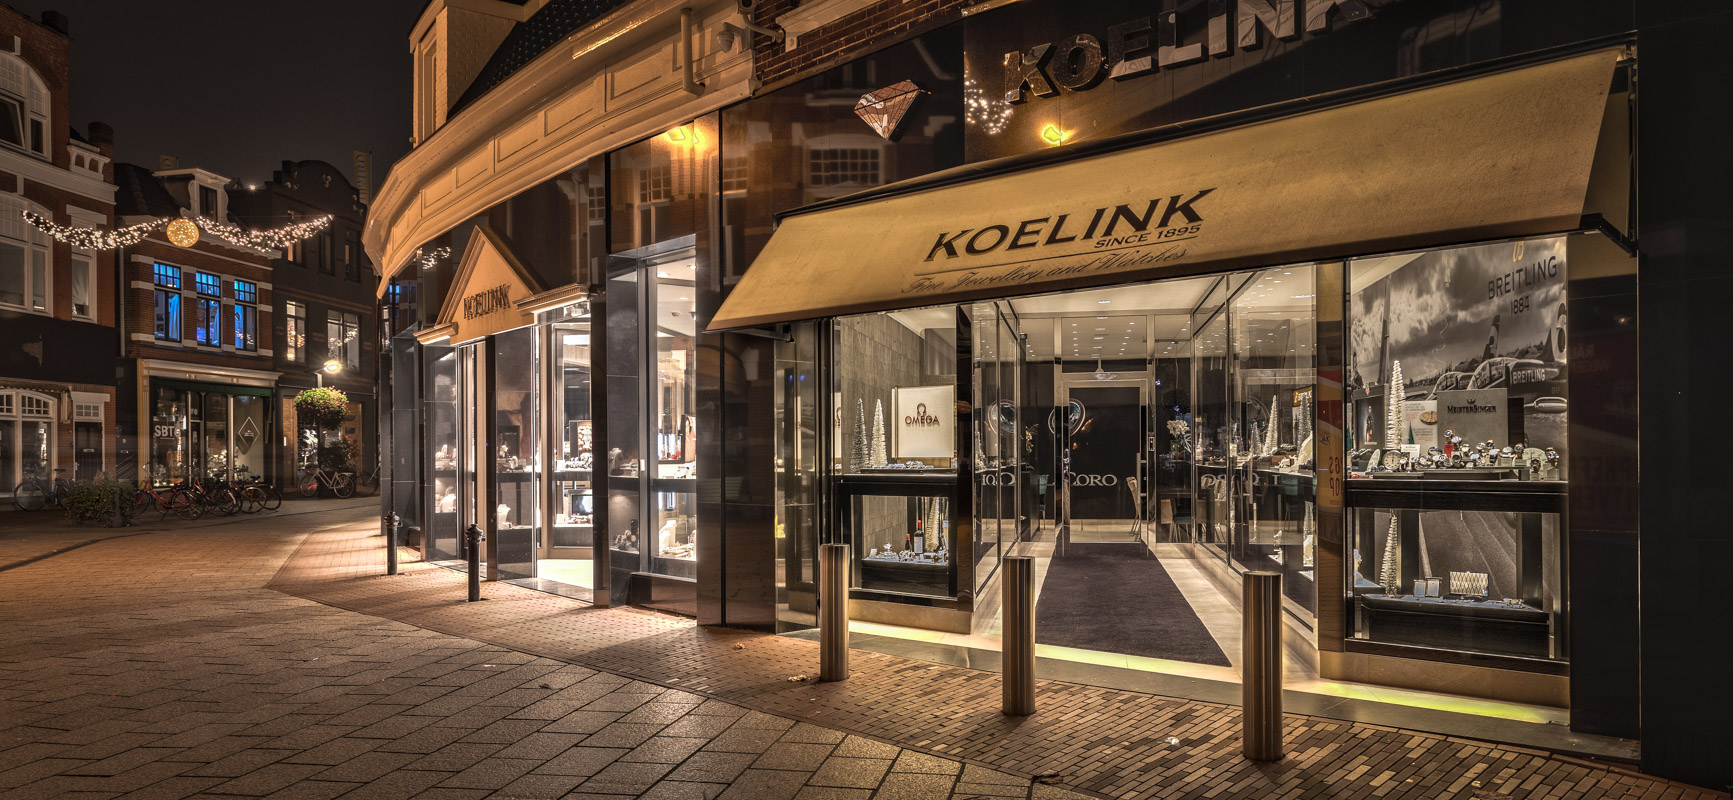 Koelink Juweliers | Enschede (NL) - Bijouterie